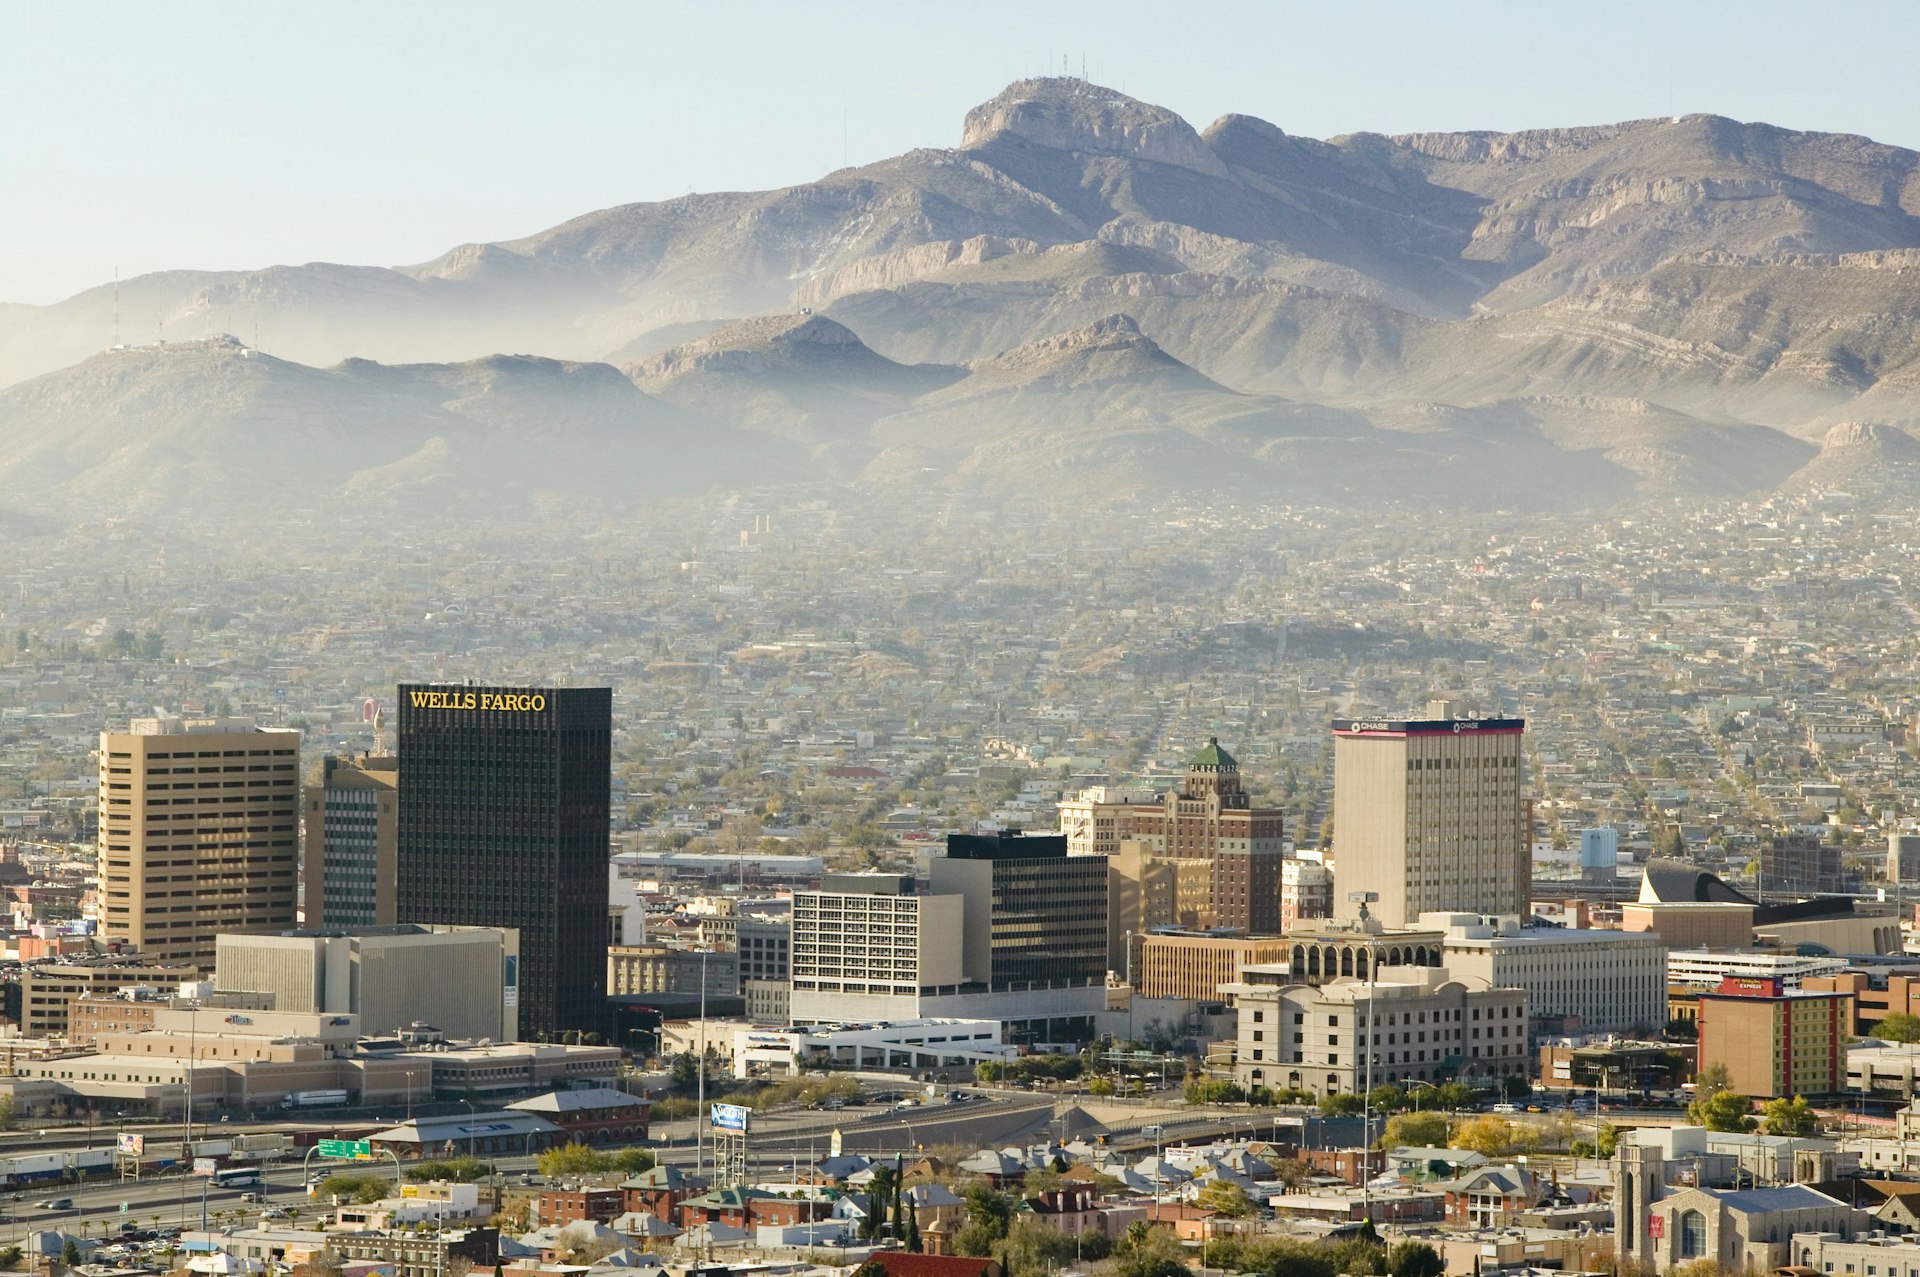 Panoramic view of skyline El Paso Texas looking toward Juarez, Mexico.